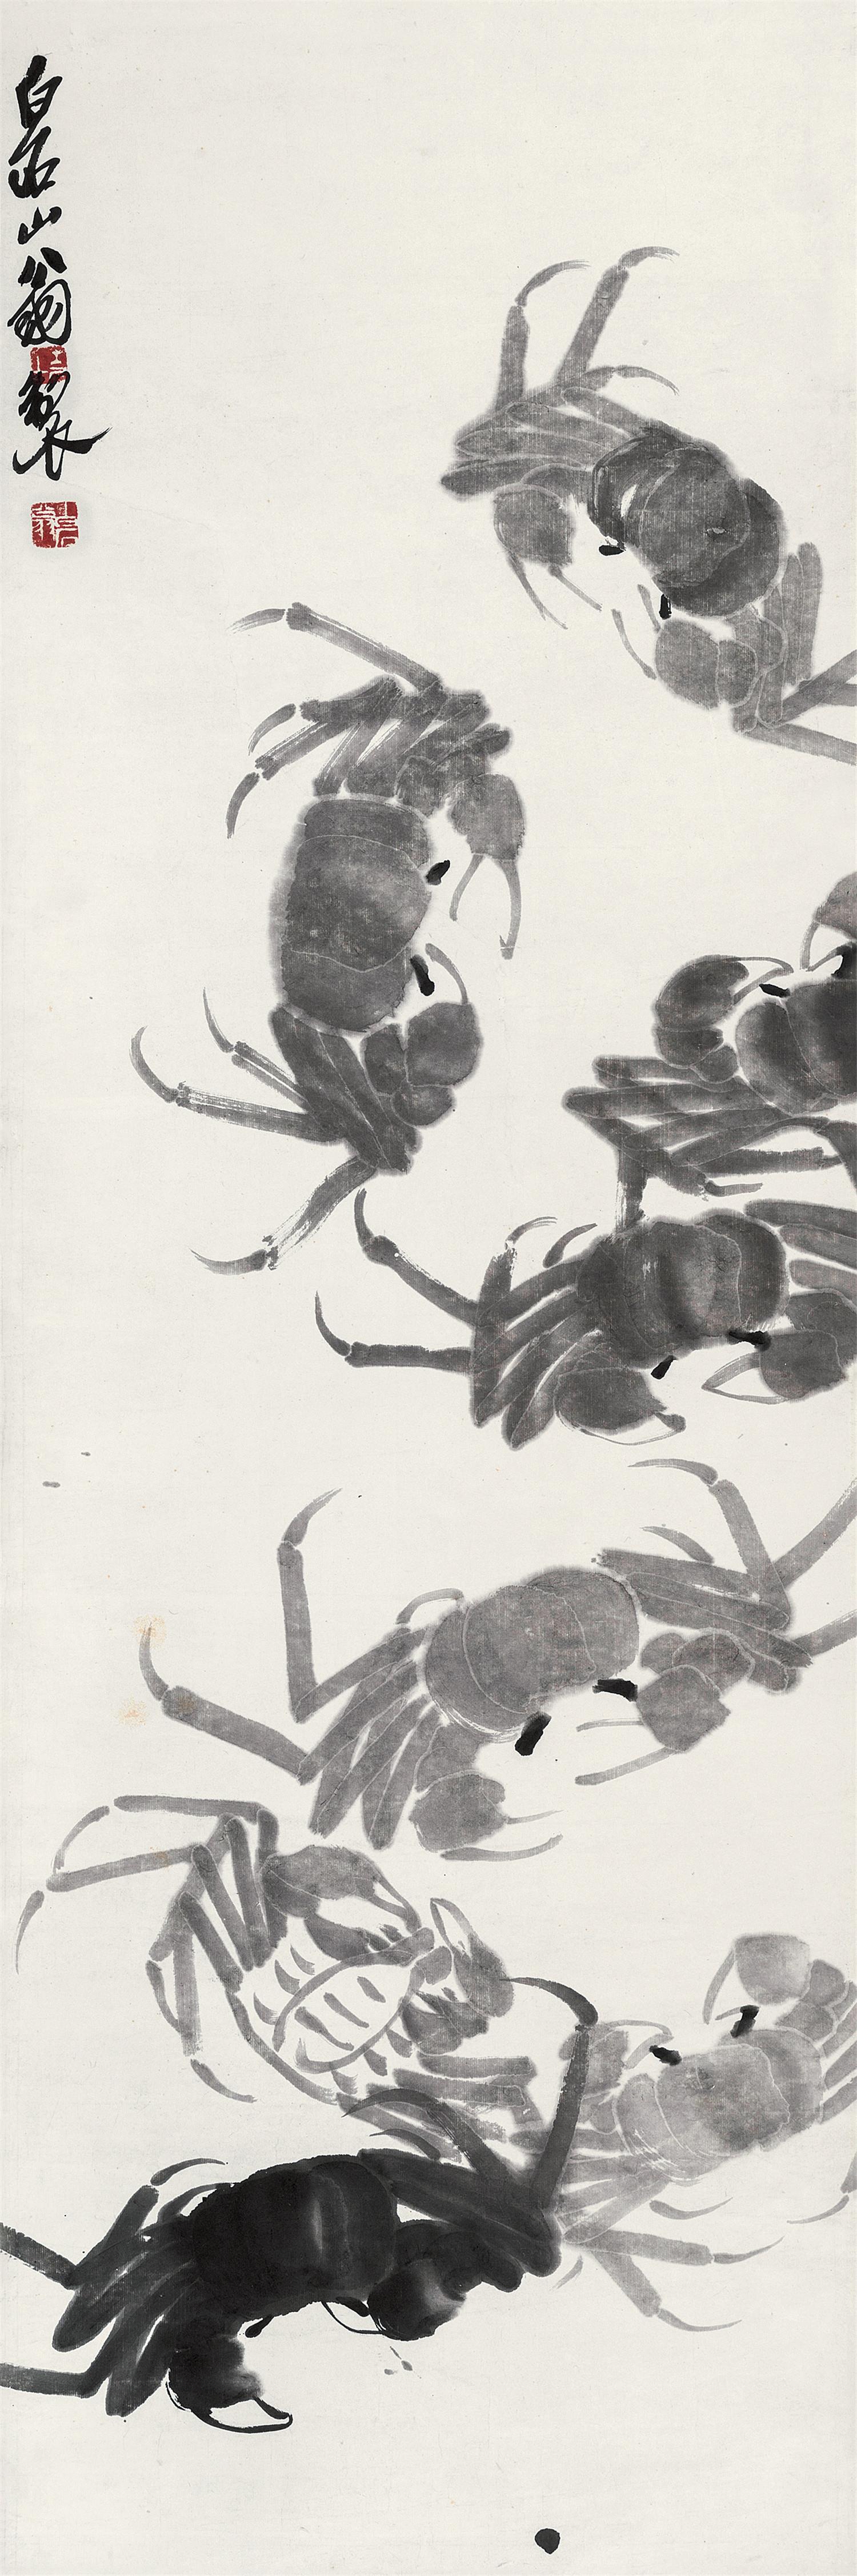 螃蟹图 立轴 水墨纸本 齐白石(1864～1957)